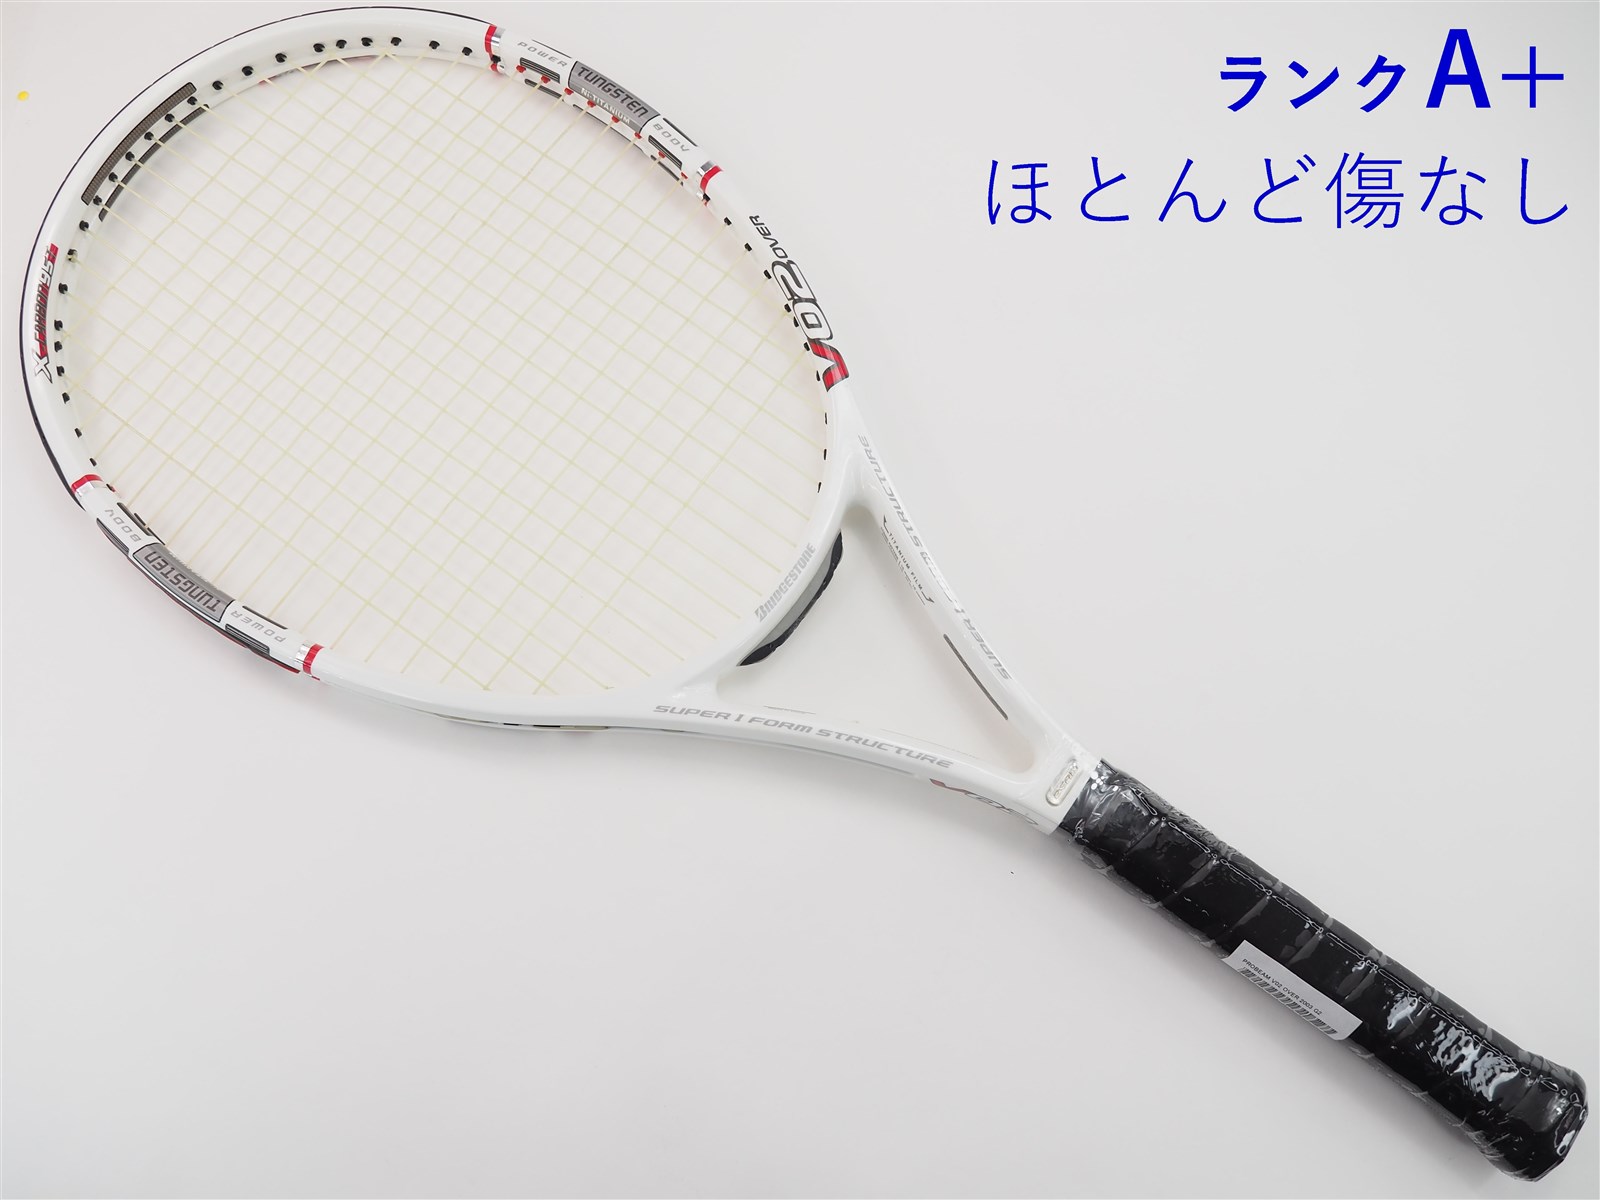 テニスラケット ブリヂストン プロビーム V-WR 2.65 2005年モデル (G1)BRIDGESTONE PROBEAM V-WR 2.65 2005285ｇ張り上げガット状態